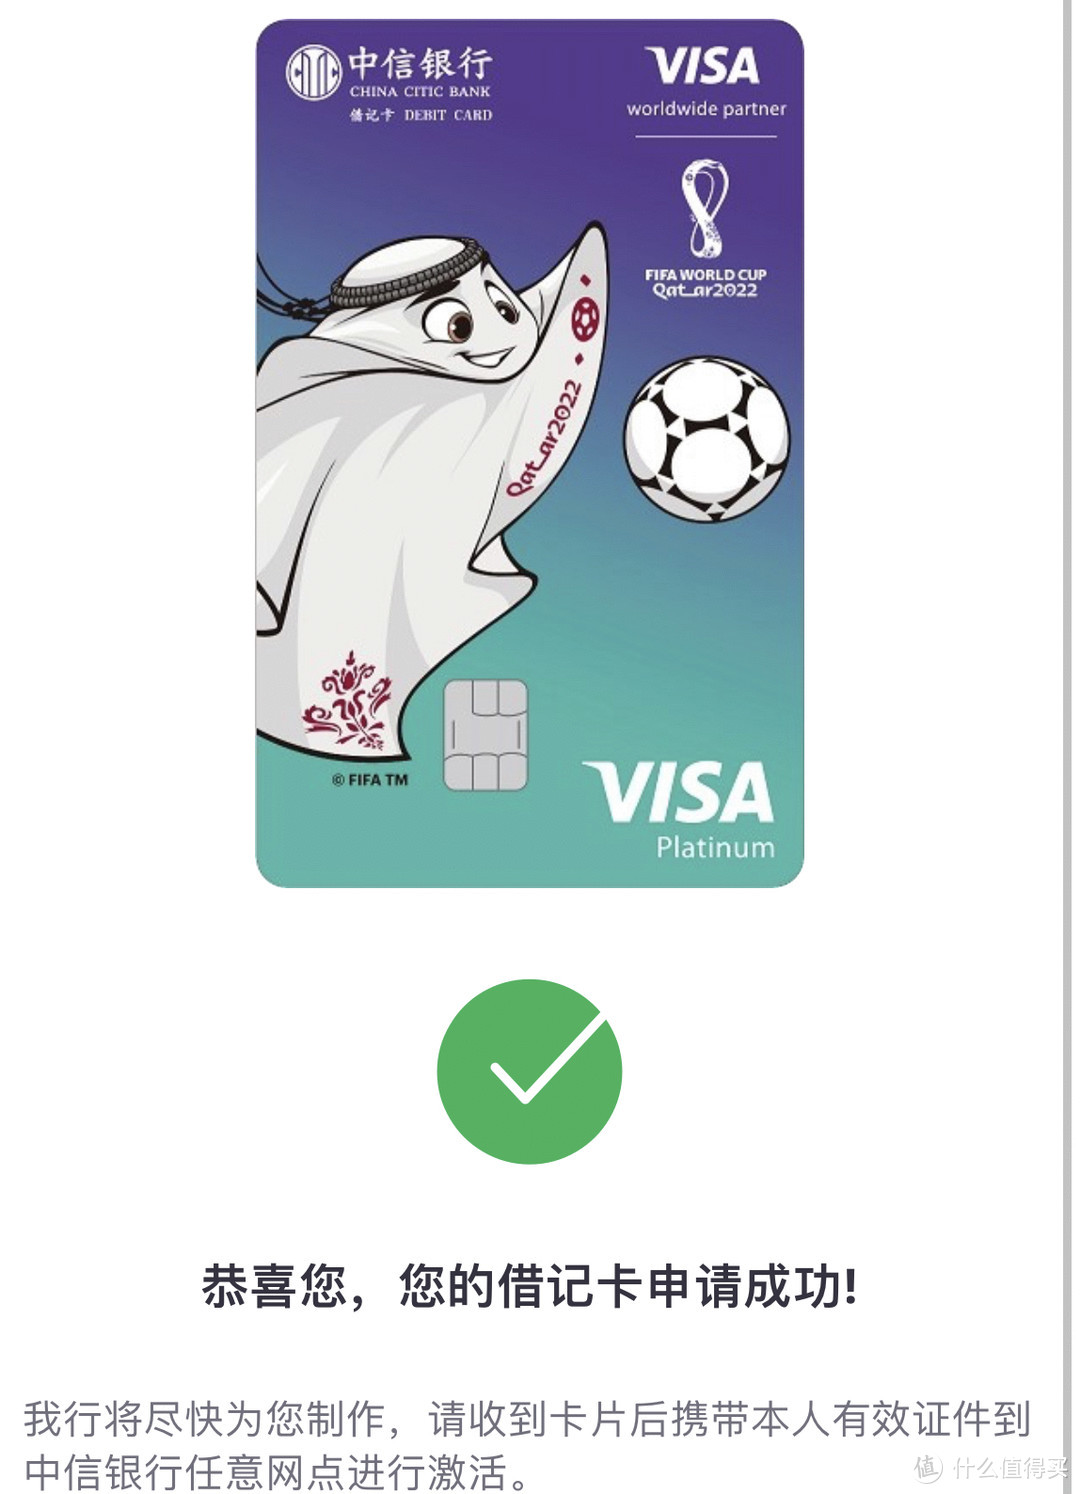 中信 FIFA 世界杯主题 Visa 借记卡